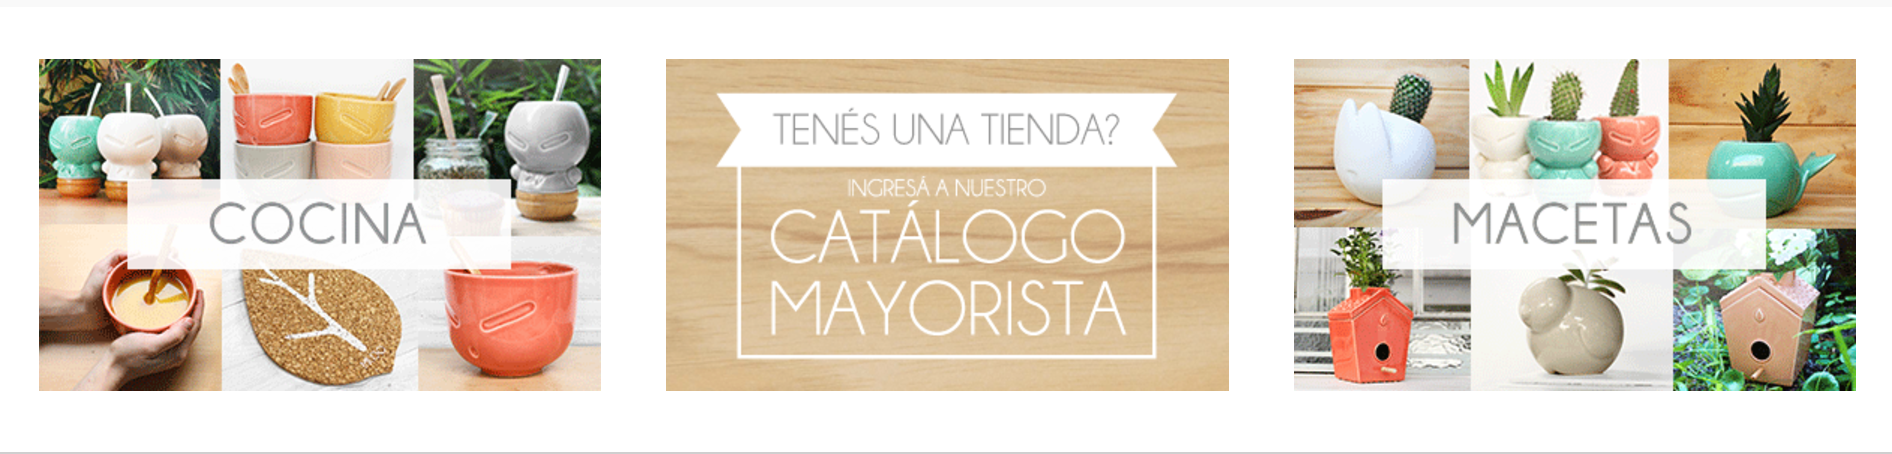 Banner horizontal con una imagen compuesta de tres secciones: "Cocina", "Catálogo mayorista" y "Macetas"